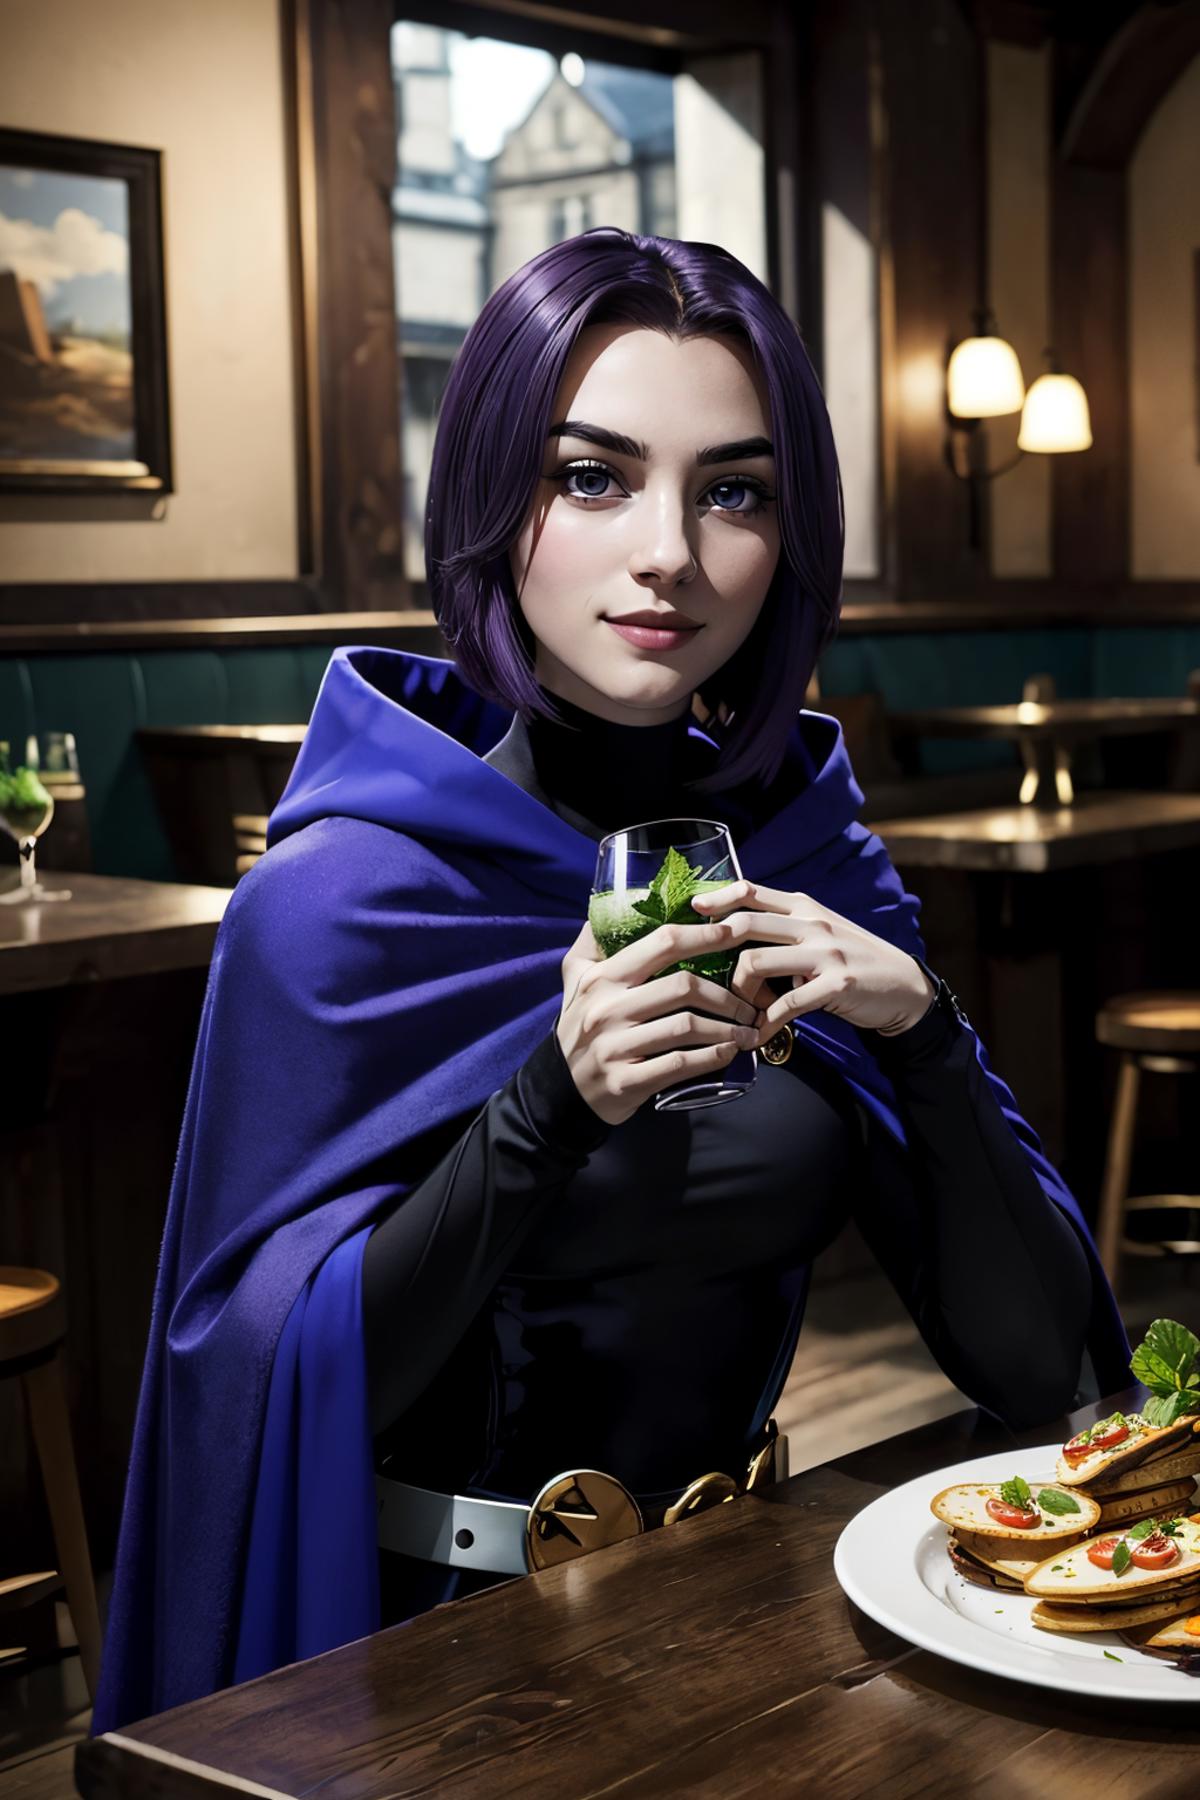 Raven (Teen Titans) - LoRa [NSFW Support] image by wikkitikki